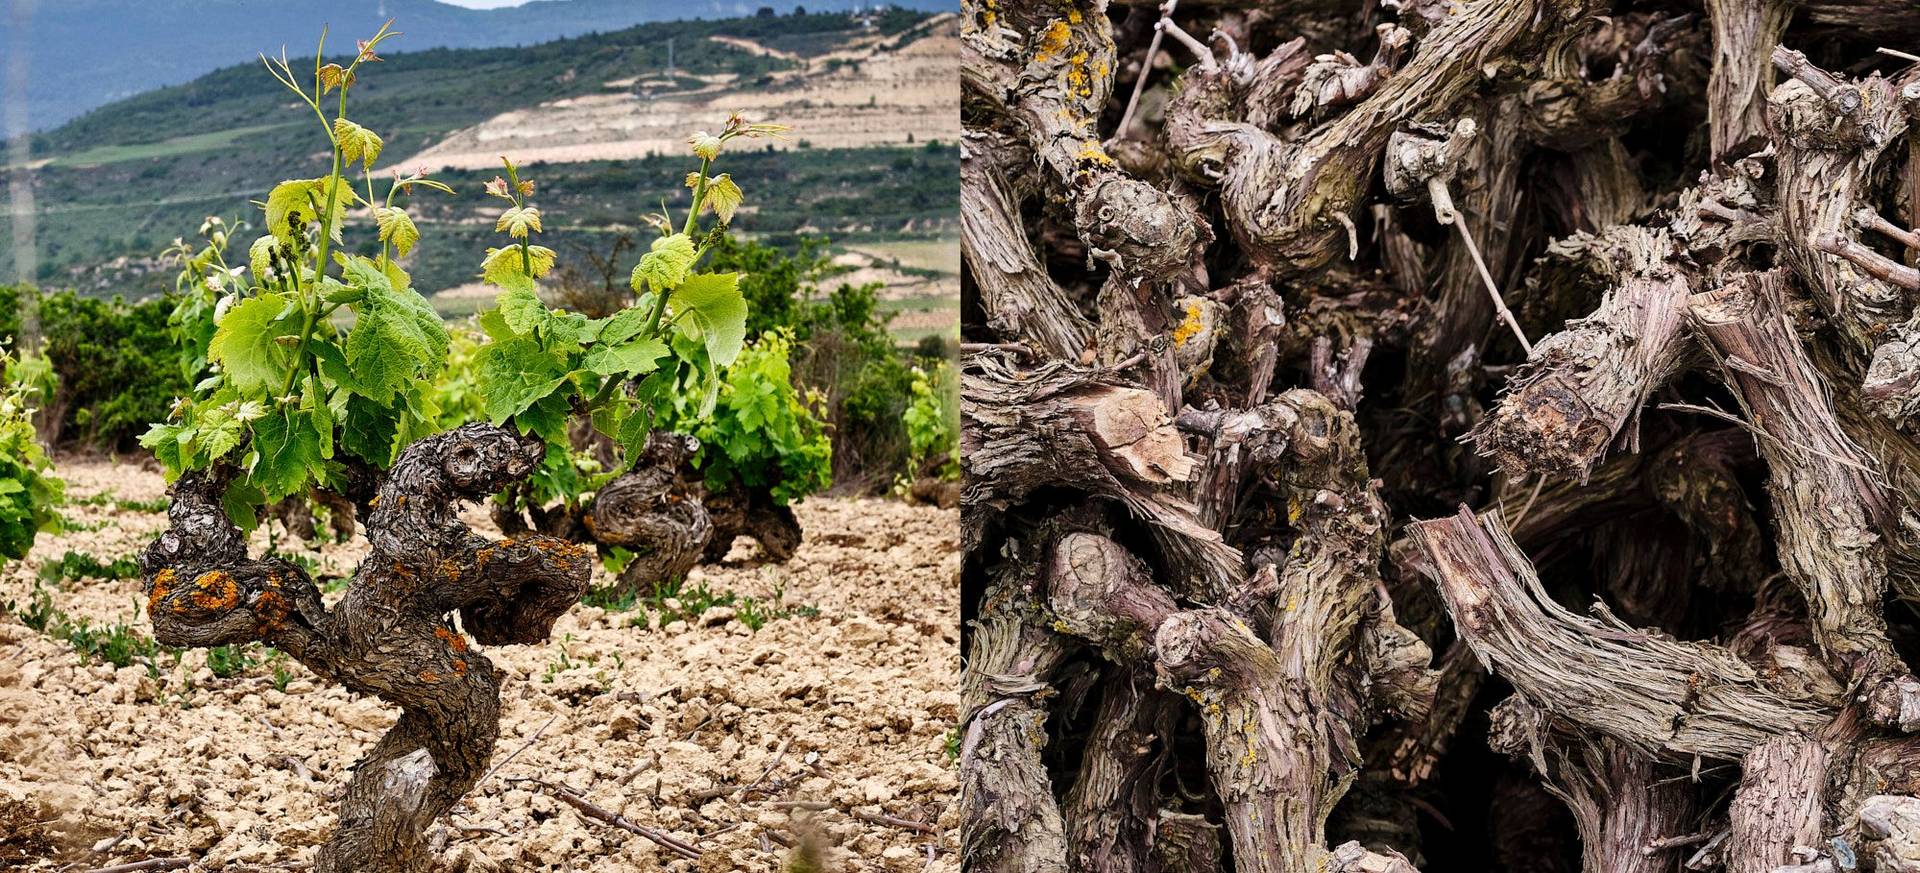 Rioja Weine Von Ramón Bilbao – eine spanische Weinreise 